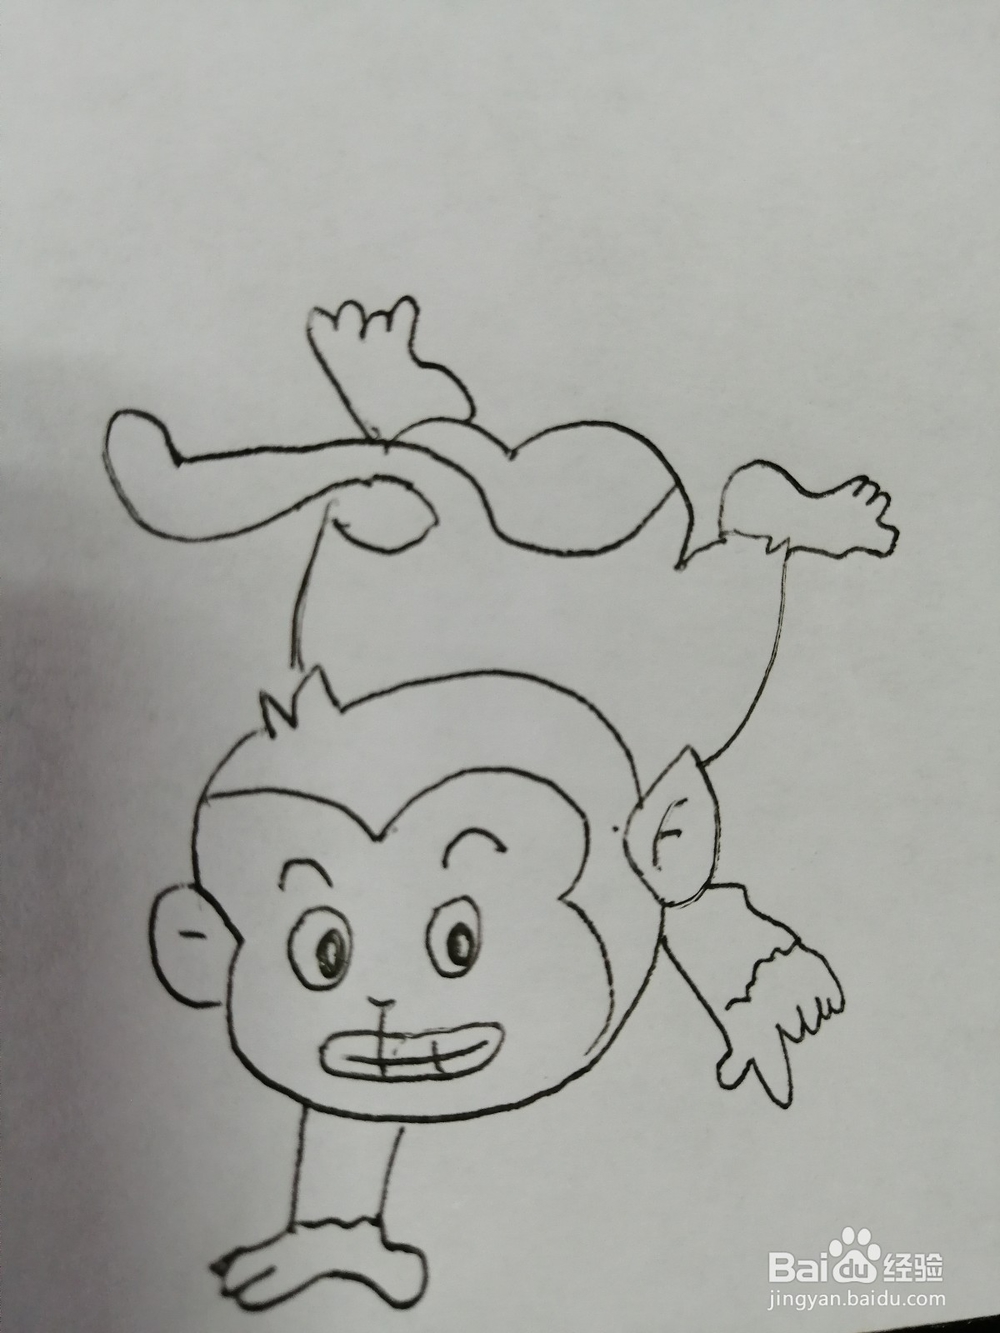 <b>倒立的小猴子怎么画</b>